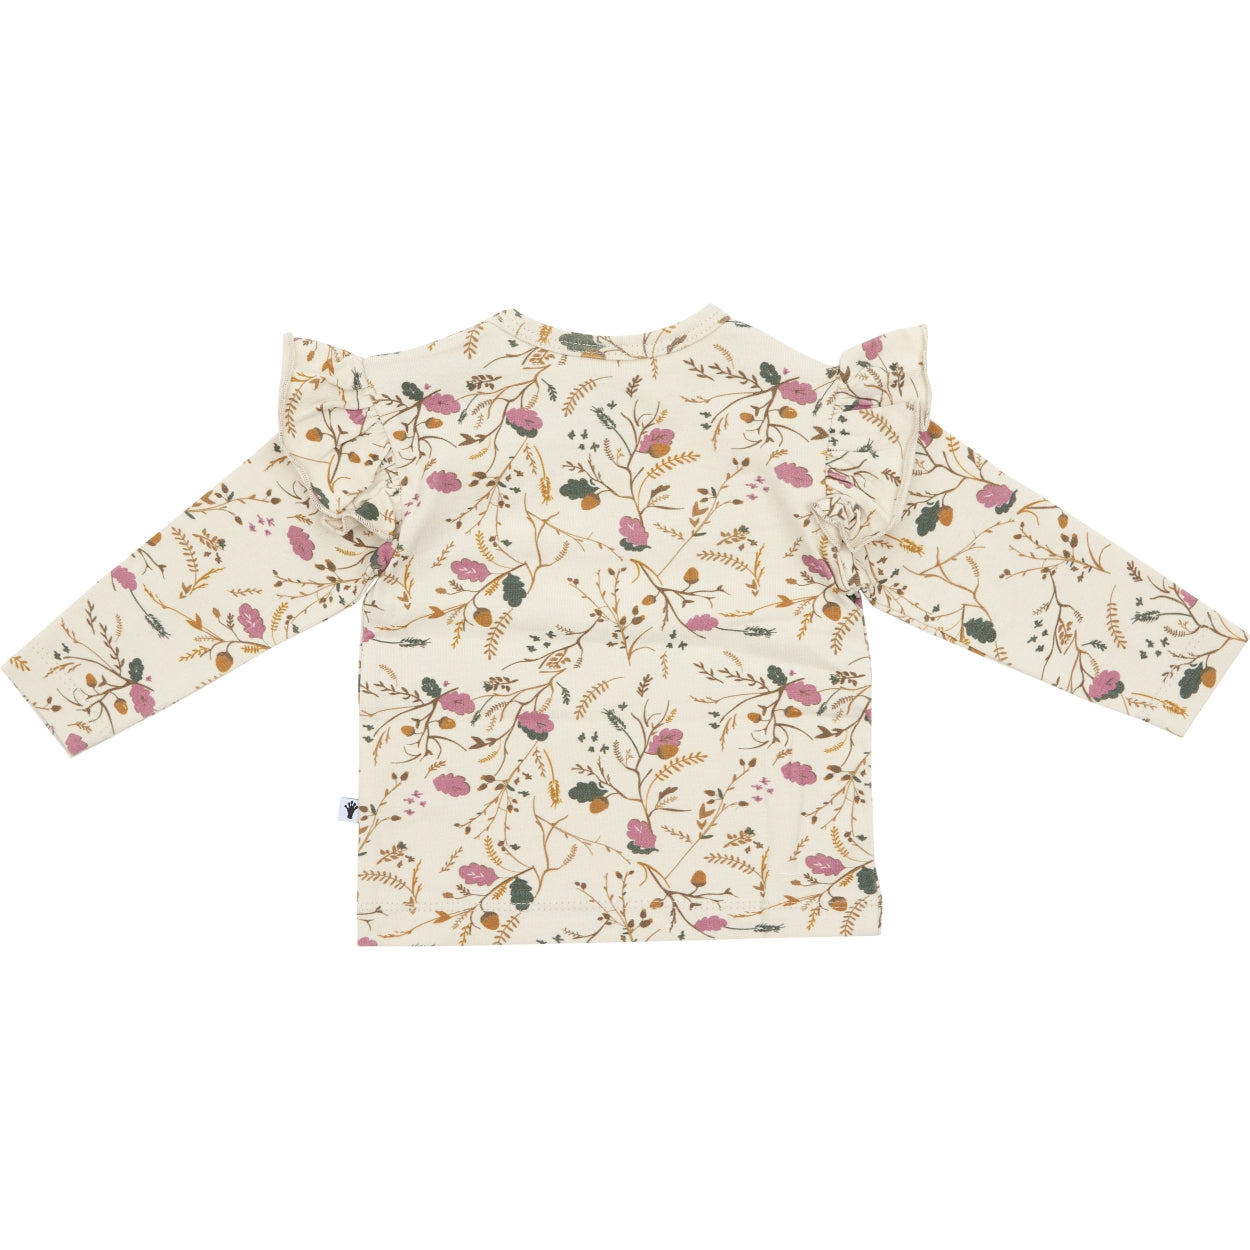 Meisjes Shirt Ruffle van Klein Baby in de kleur AOP Flower/Acorn in maat 74.